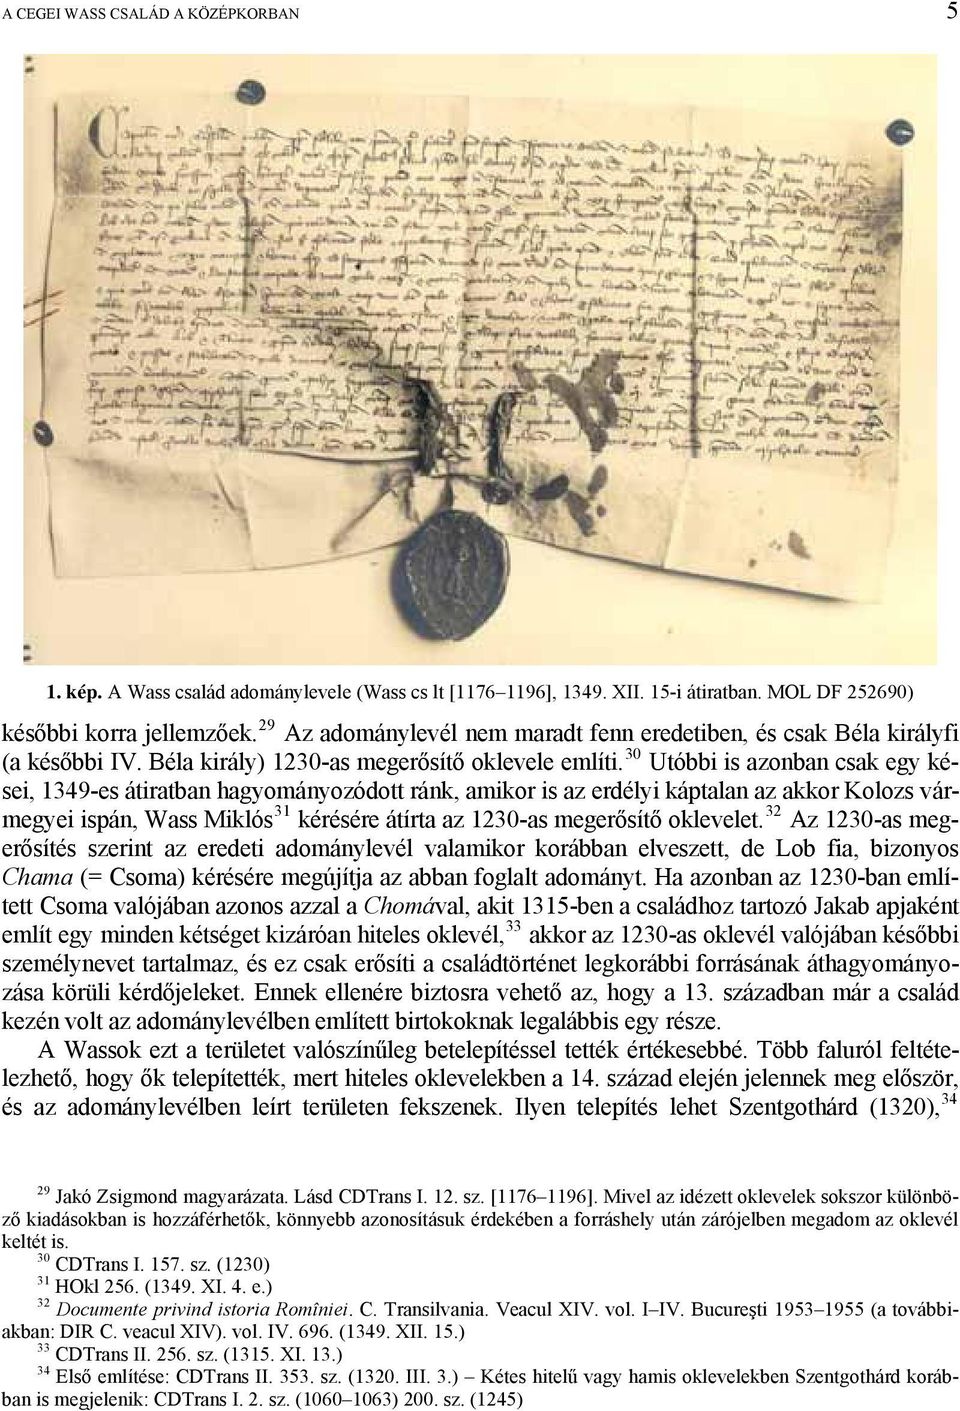 30 Utóbbi is azonban csak egy kései, 1349-es átiratban hagyományozódott ránk, amikor is az erdélyi káptalan az akkor Kolozs vármegyei ispán, Wass Miklós 31 kérésére átírta az 1230-as megerősítő